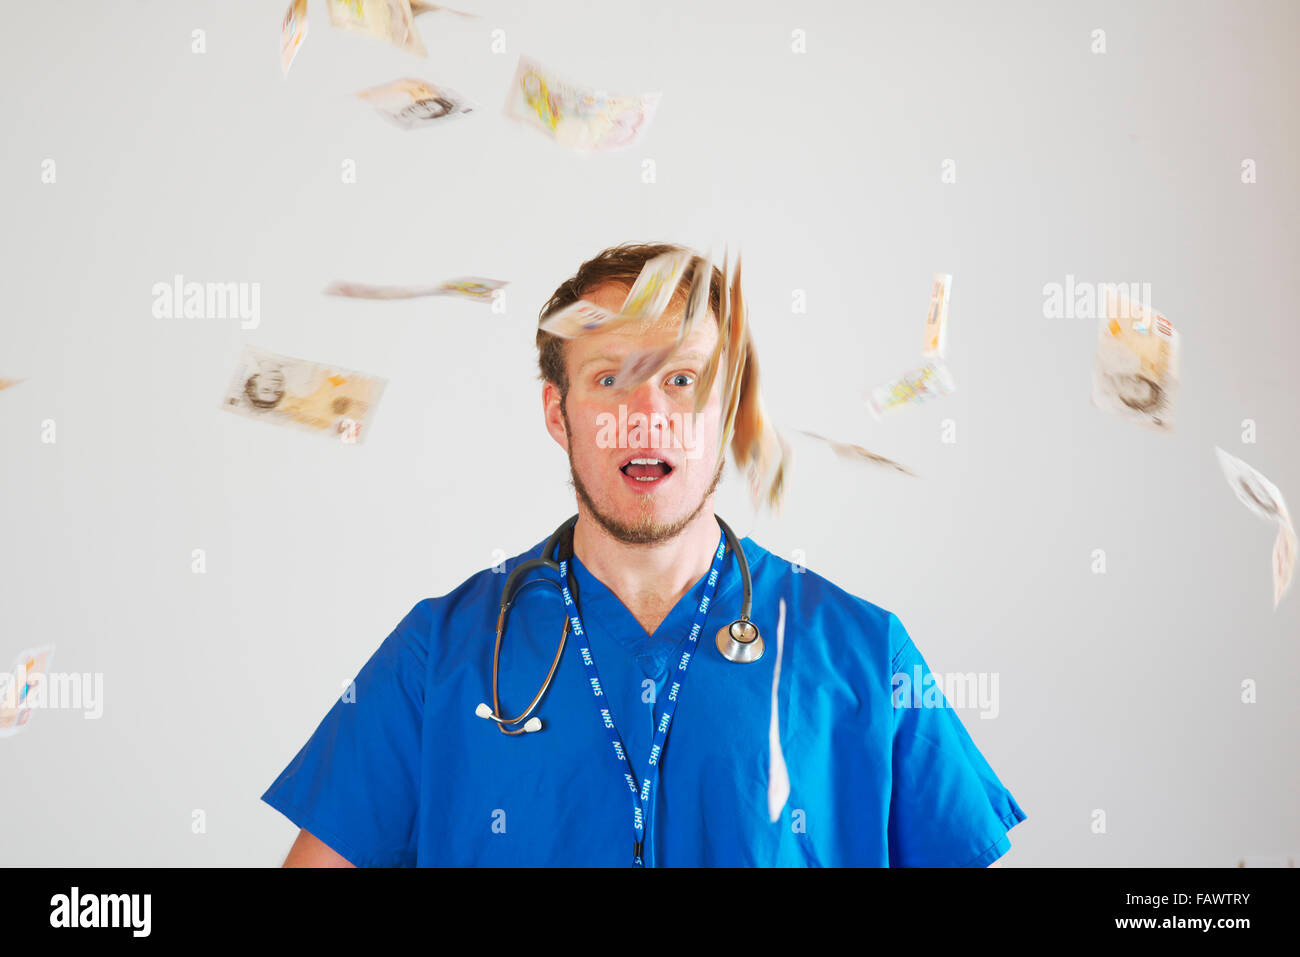 Junge weiße männliche Junioren Krankenhausarzt im Theater Blues tragen ein Stethoskop wirft eine Handvoll von zehn Pfund-Noten in die Luft Stockfoto